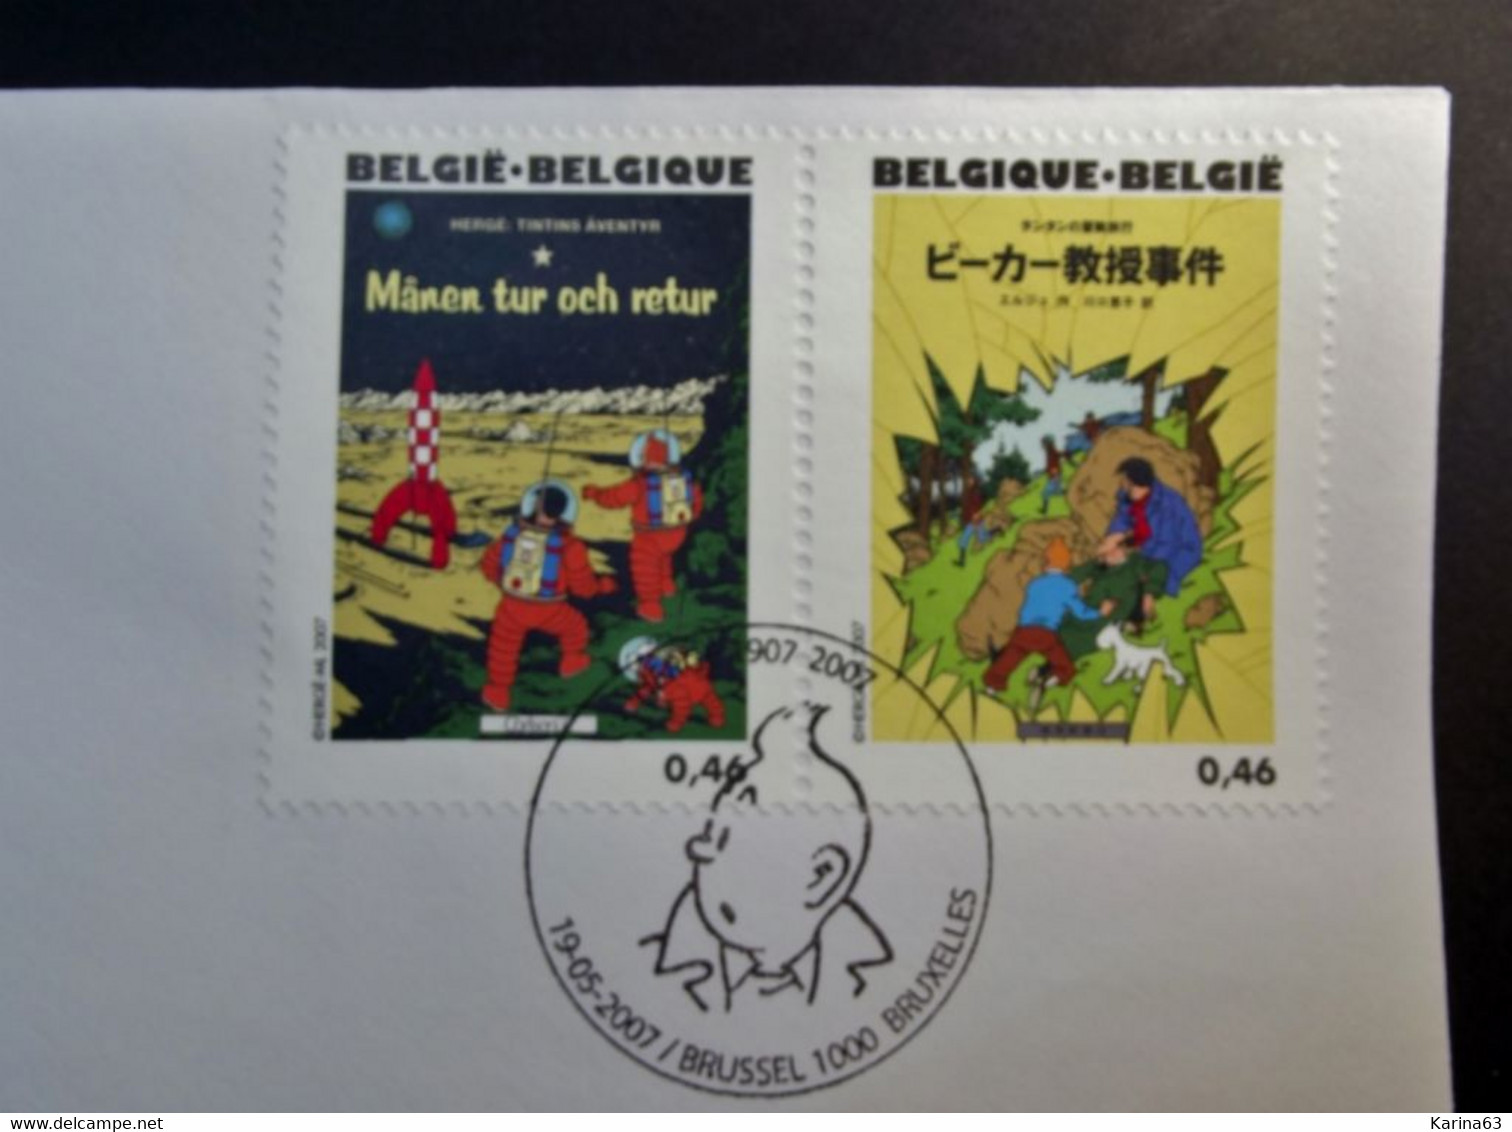 Belgie - Belgique - 2007 - OPB 3636/60 - Verjaardag Hergé - 13 enveloppes afgestempeld  19.05.2007 Brussel Bruxelles